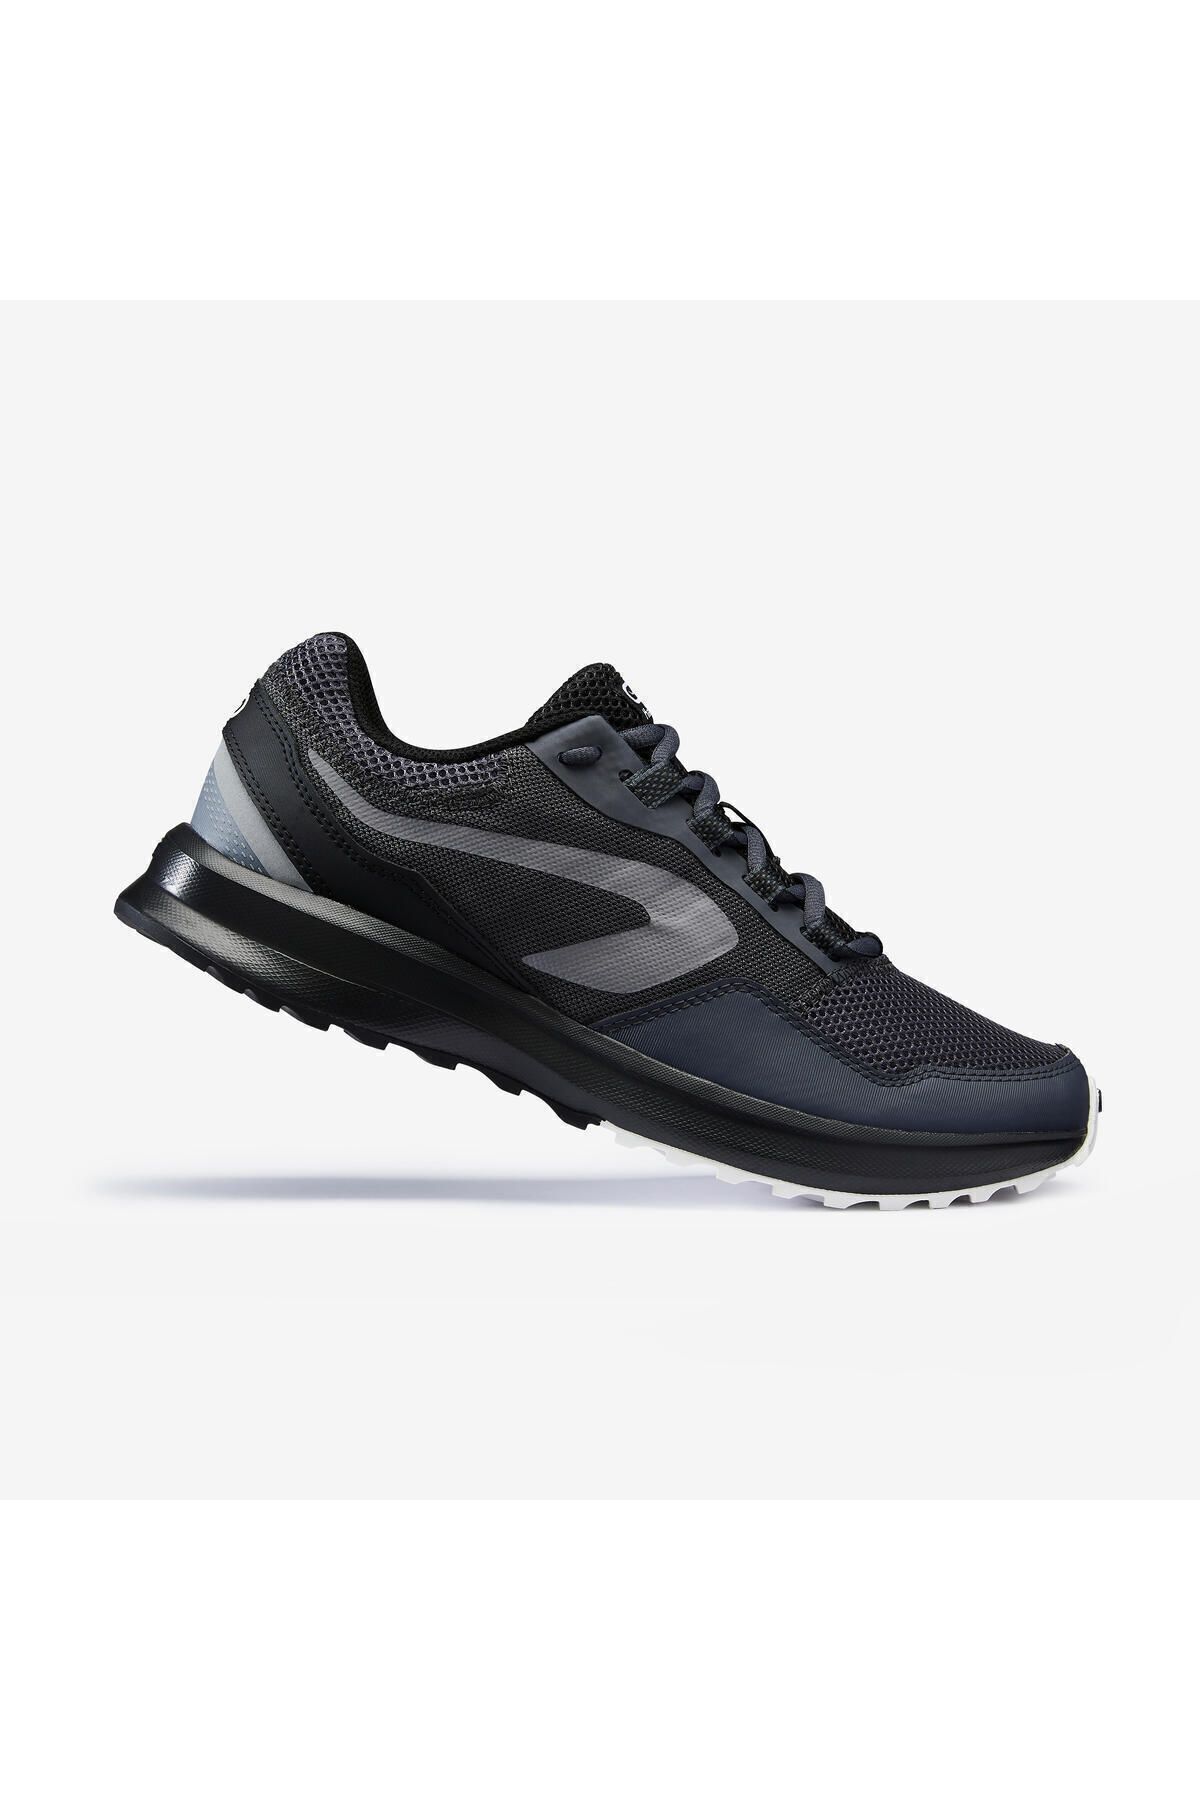 Decathlon Kalenji Erkek Koşu Ayakkabısı - Siyah / Gri - Run Active Grip